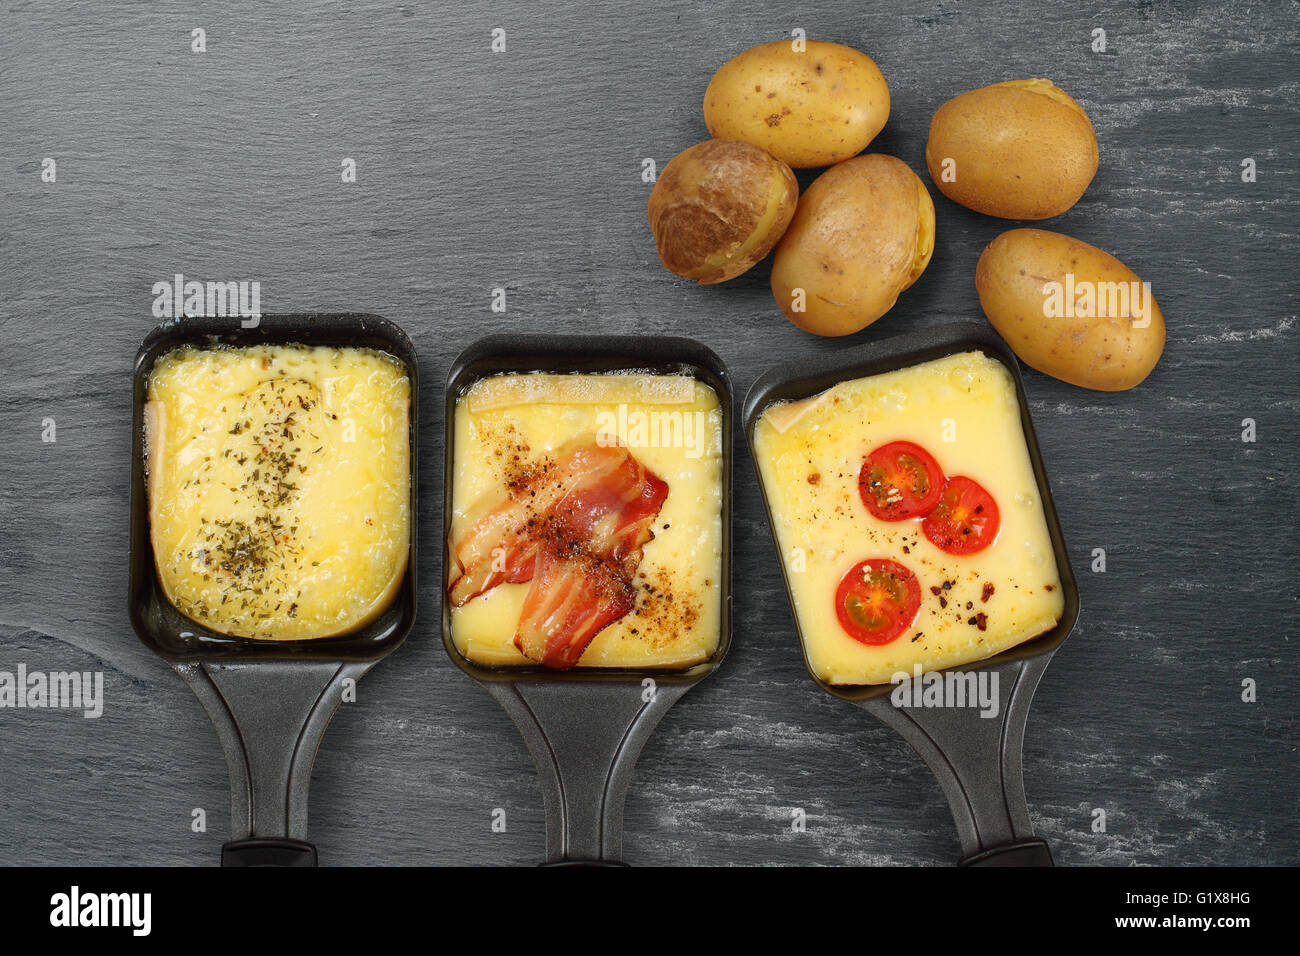 Photo d'une raclette avec trois plateaux de fromage fondu, de fines herbes, tomate cerise, bacon, l'oignon et les pommes de terre sur l'ardoise. Beaucoup de sp Banque D'Images